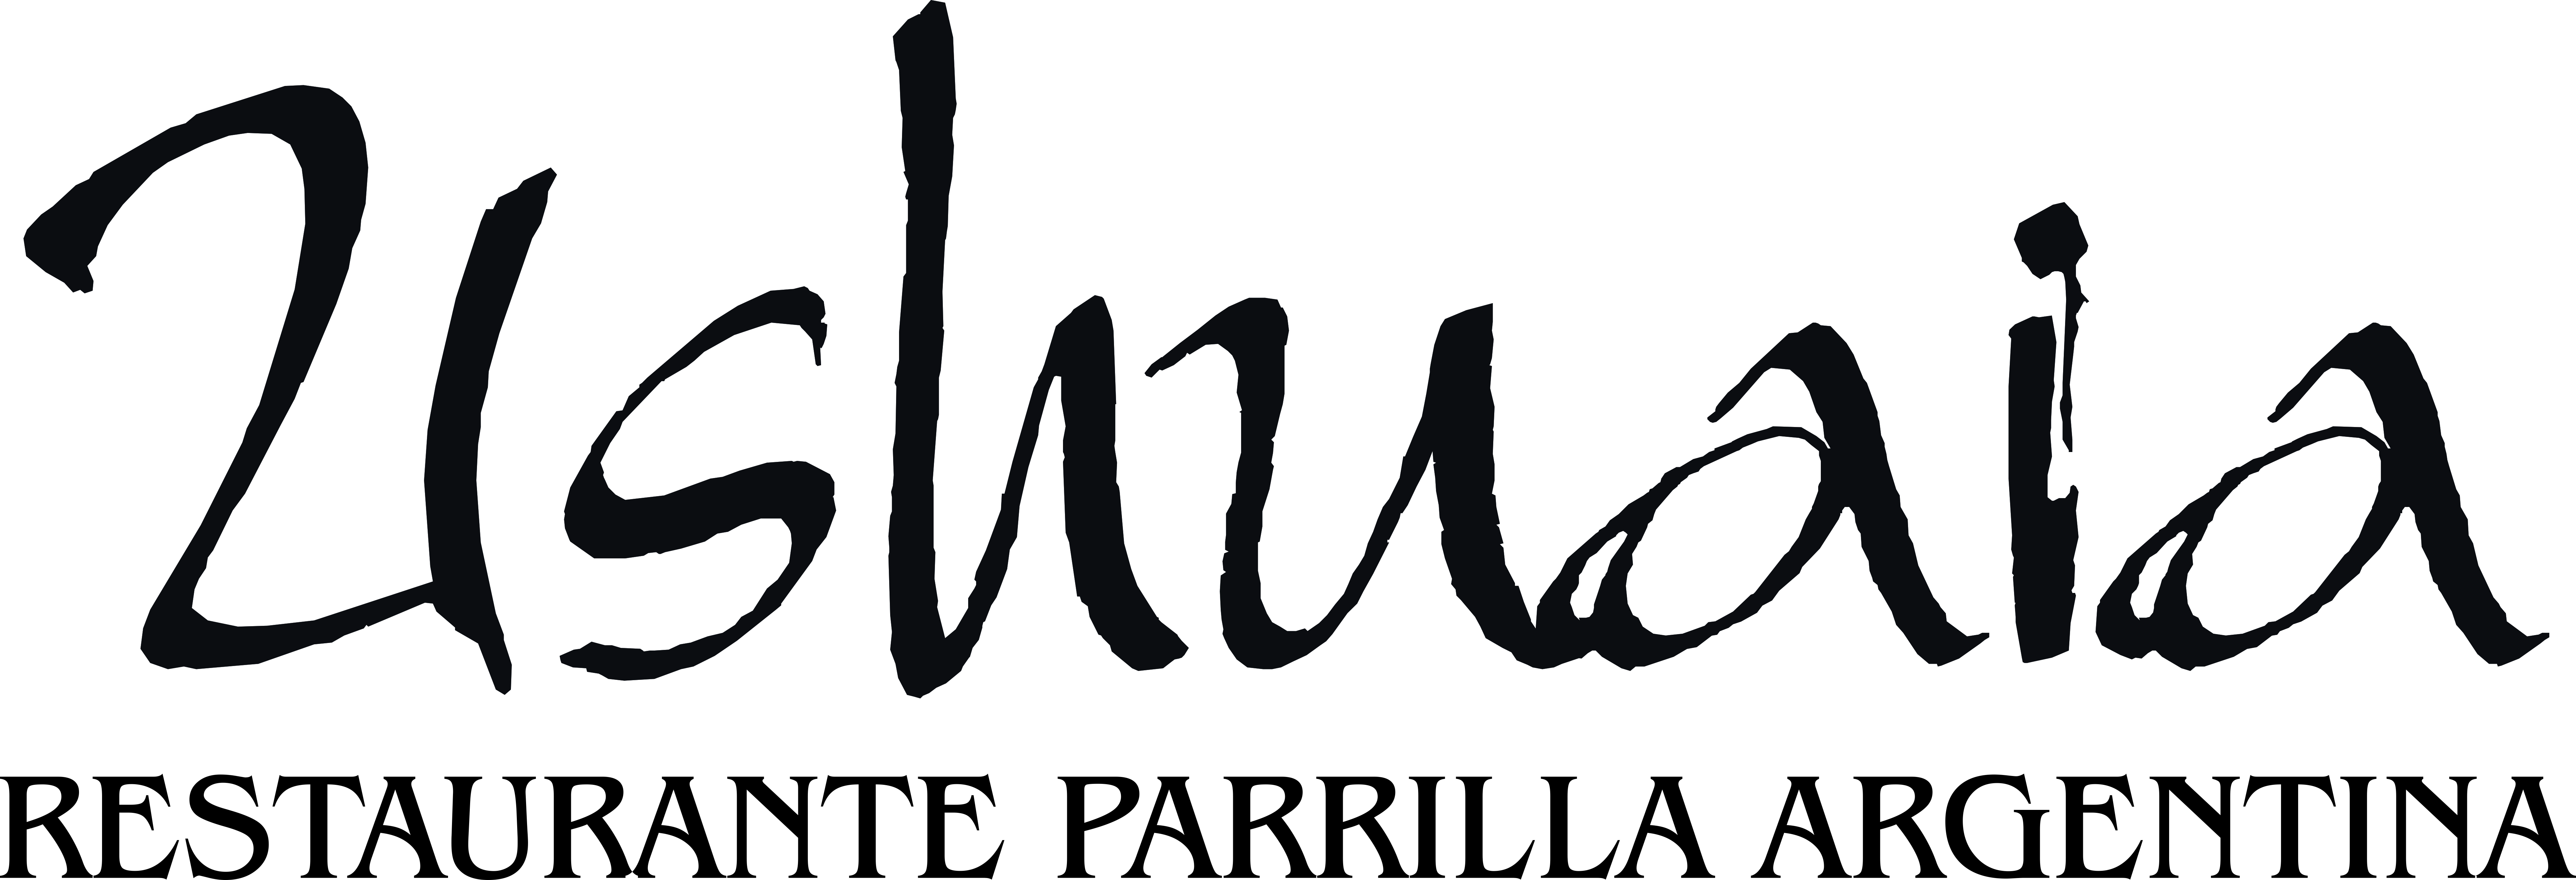 Restaurant Parrilla Argentina Ushuaia se renueva